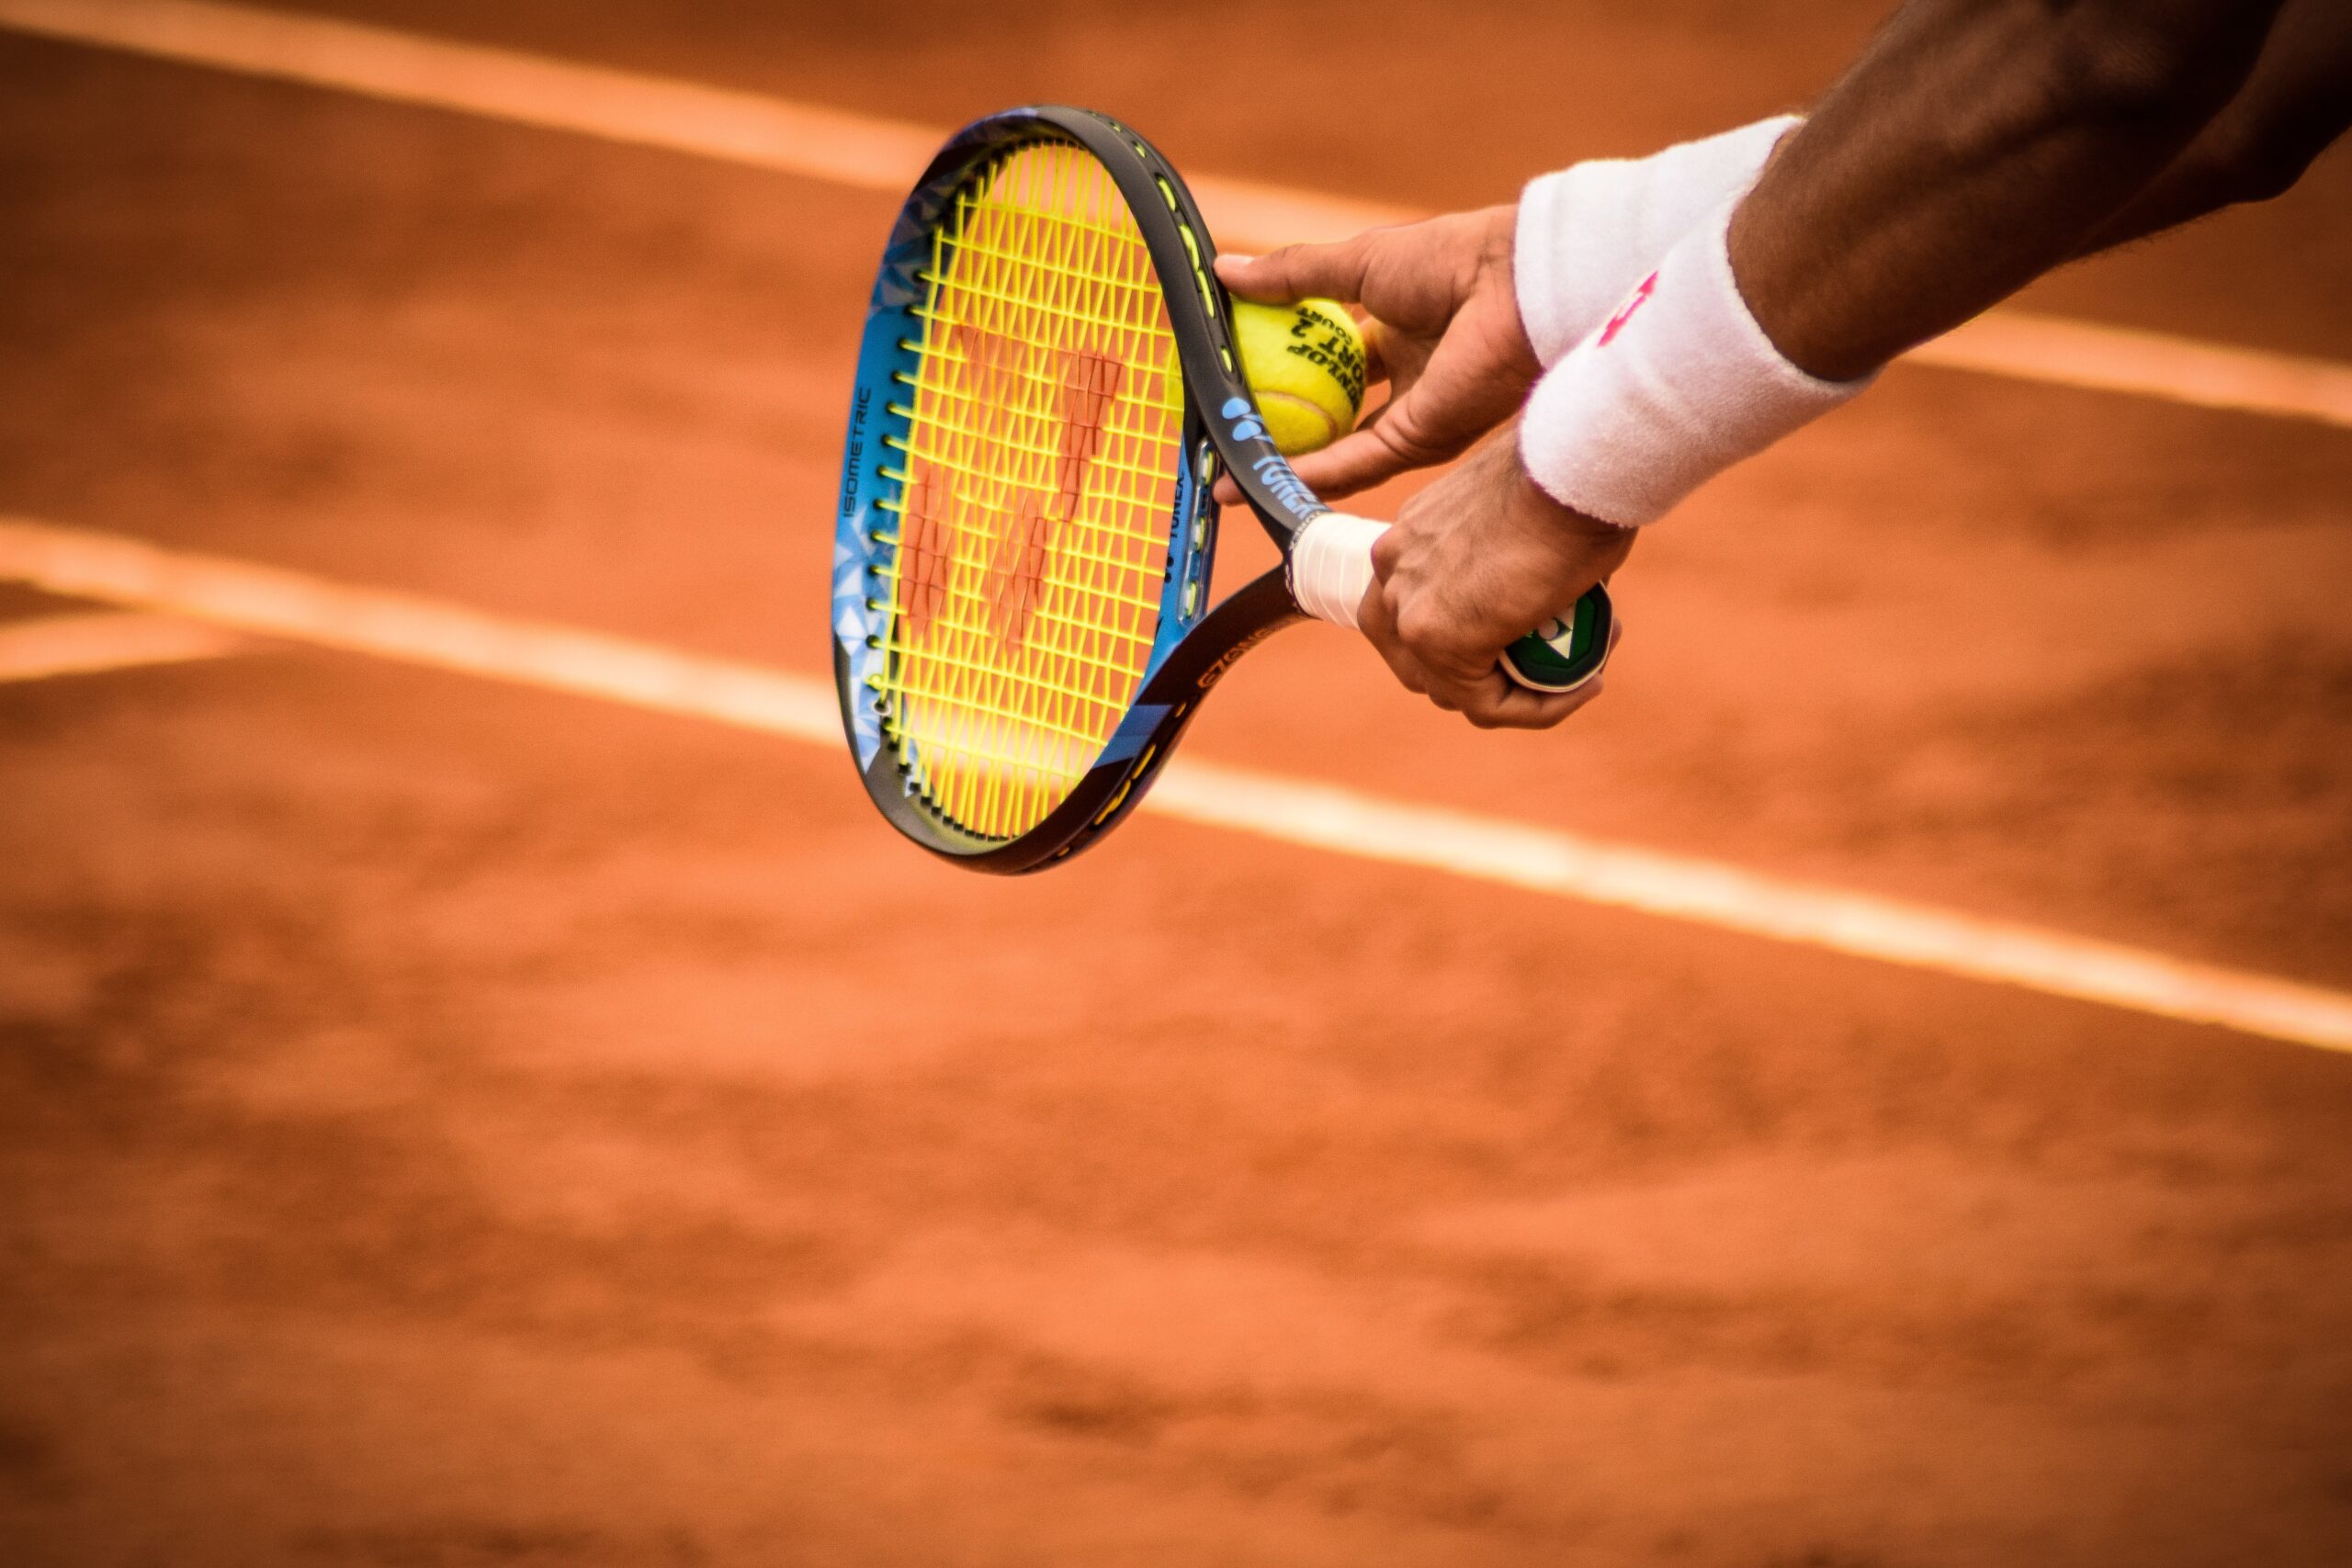 Tennisser houdt tennisracket en tennisbal vast boven een bruine tennisbaan.